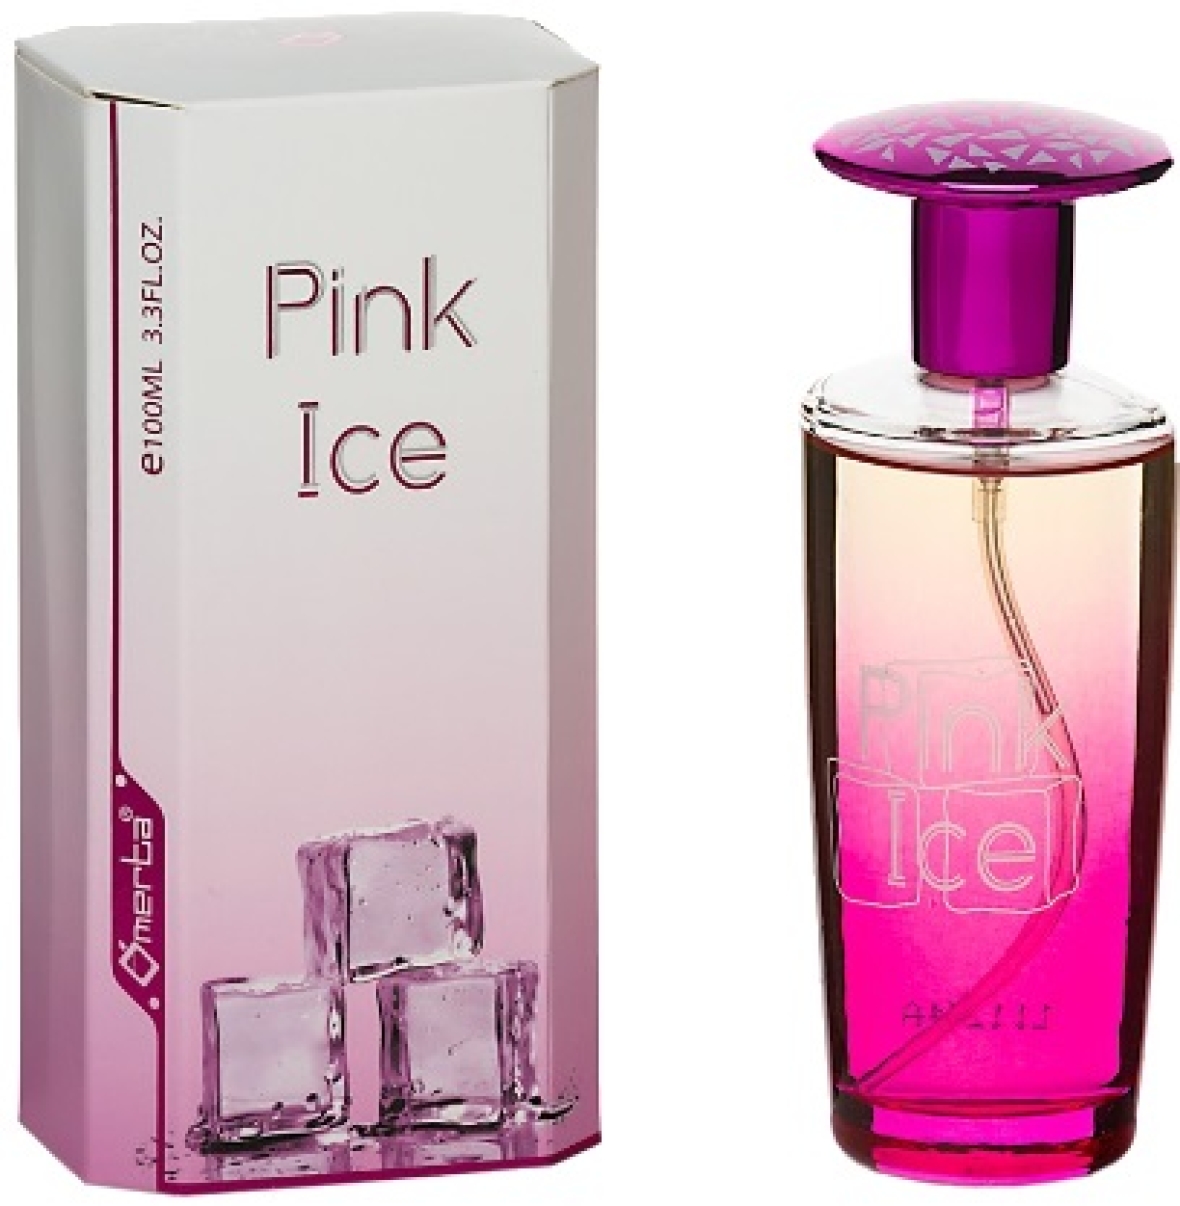 Notre gamme de parfums F.33 PINK ICE Financer voyage scolaire